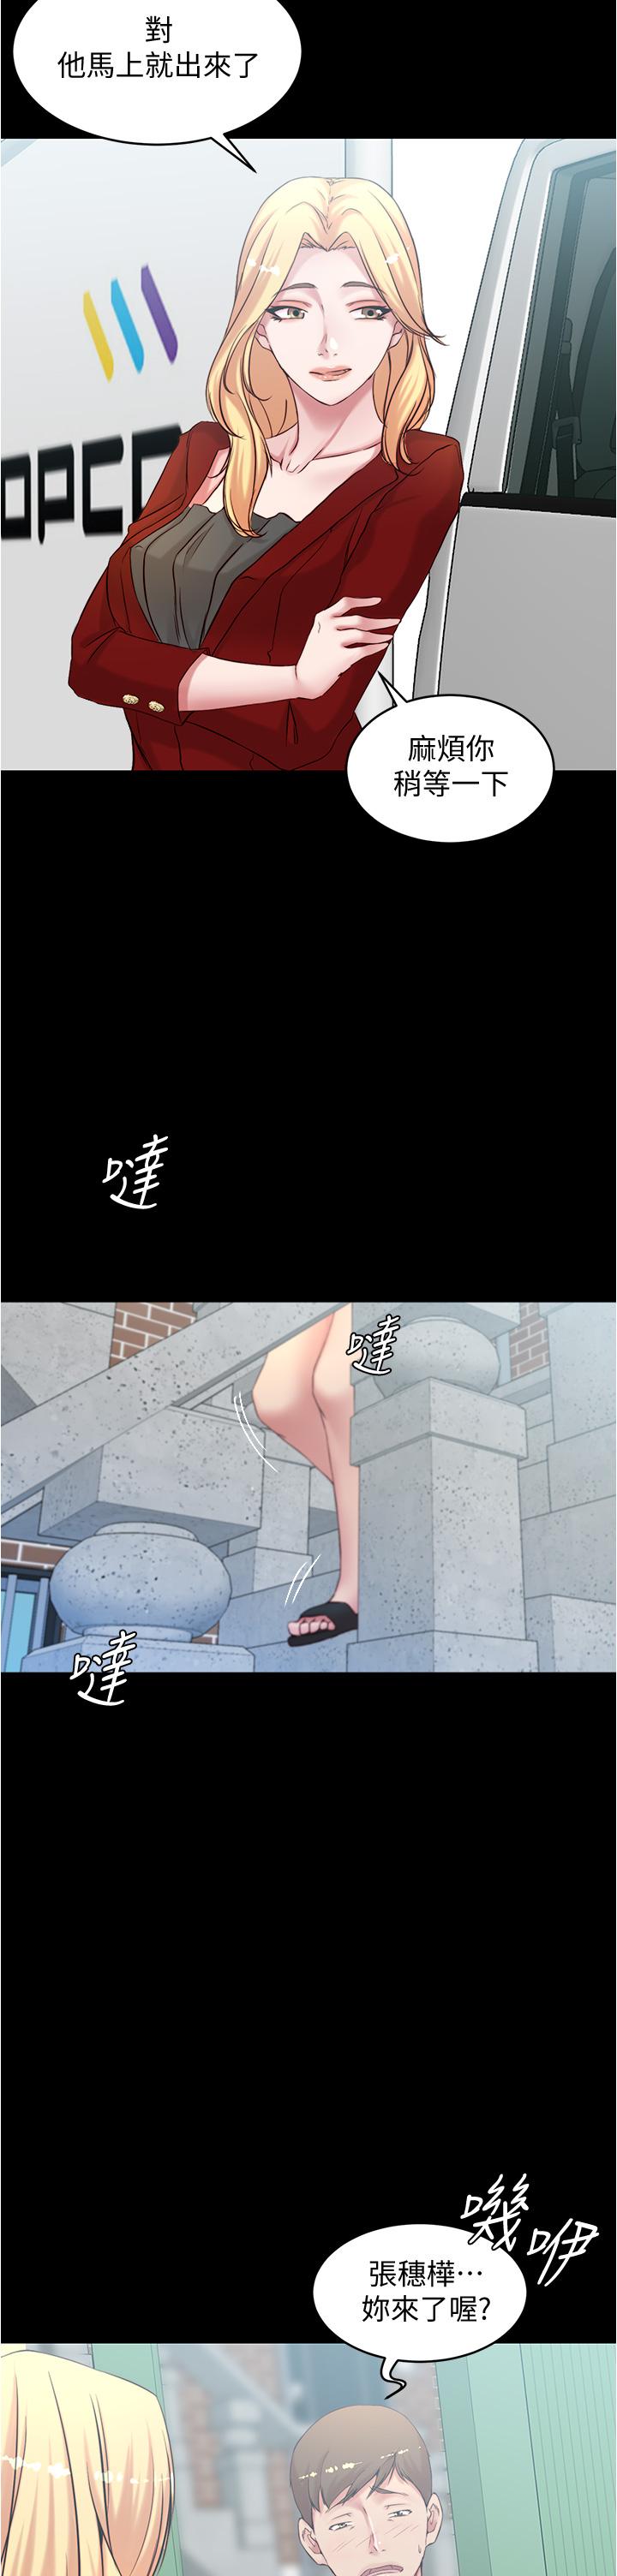 小褲褲筆記漫画 免费阅读 第37话-开始跟张惠桦同居 28.jpg